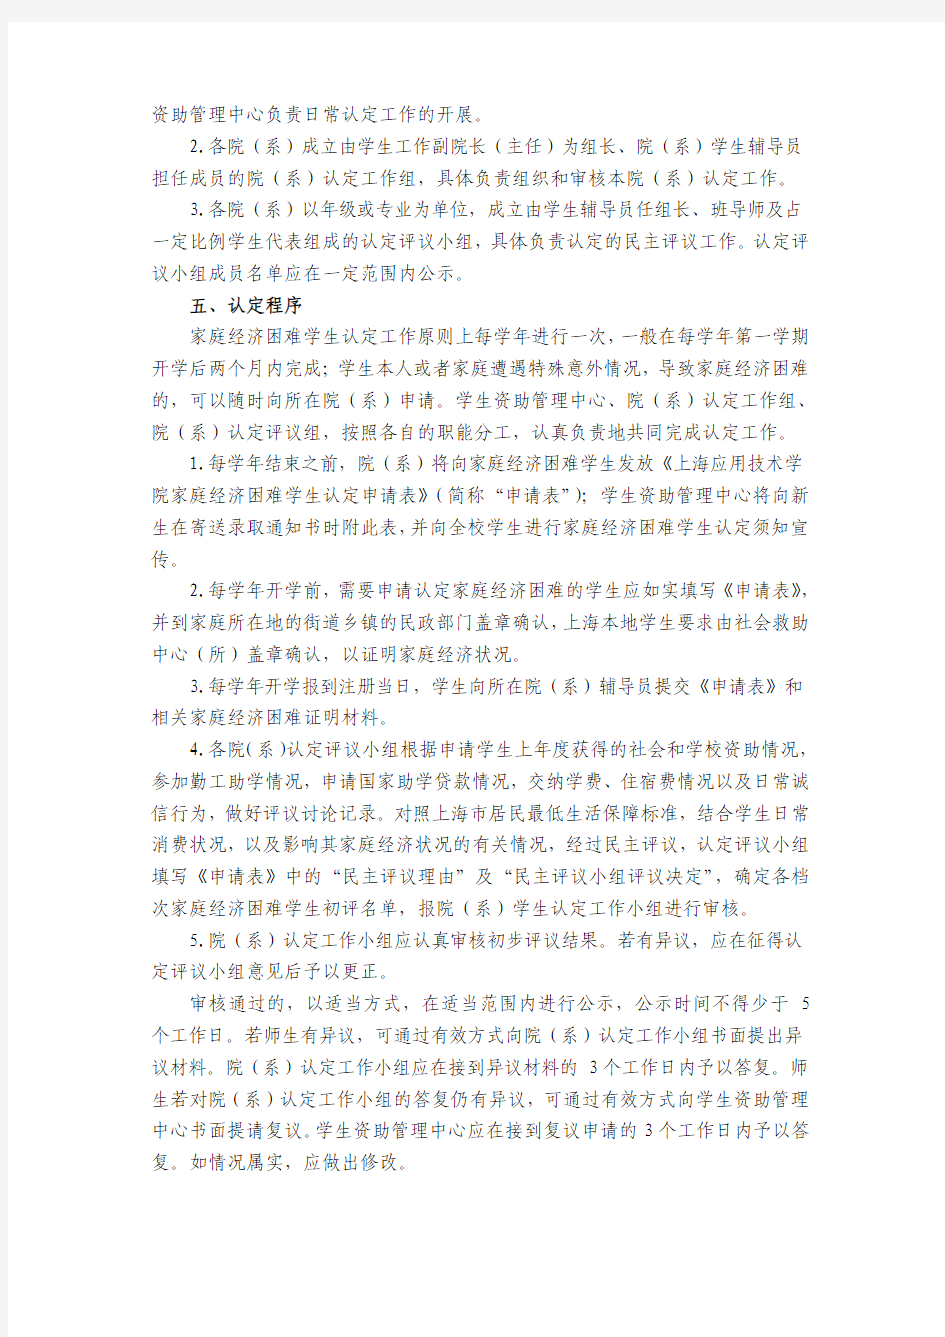 上海应用技术学院困难学生认定办法